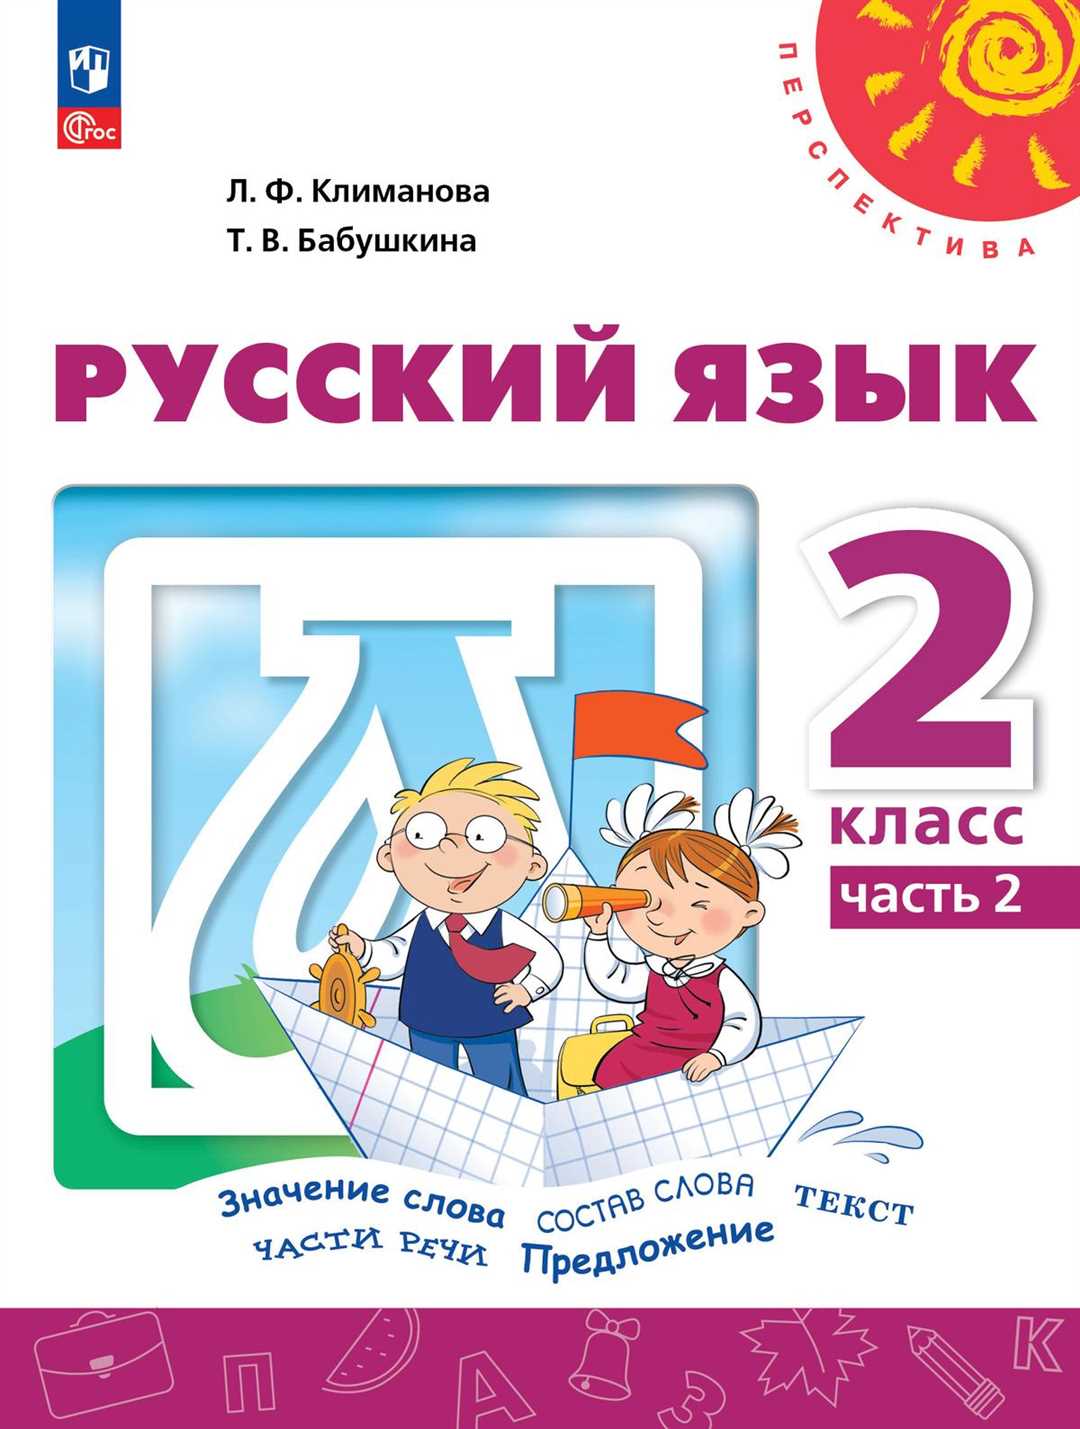 Упражнение №162 из учебника Канакина и Горецкого: веселится русский язык!